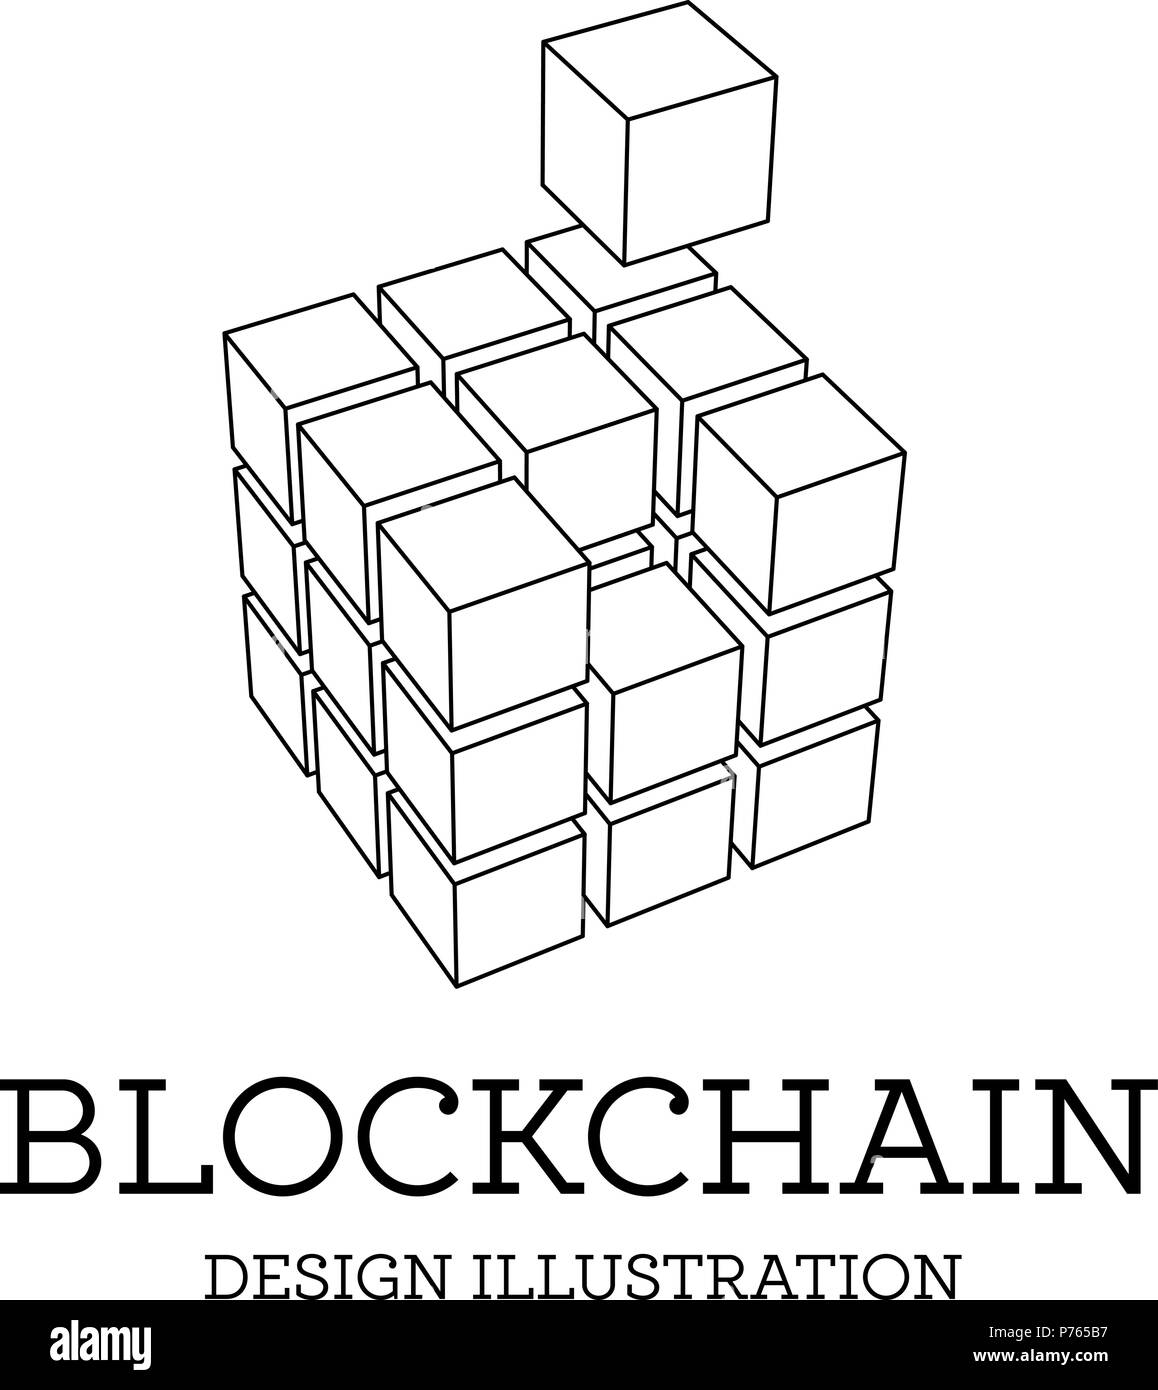 Blockchain vector illustration sous forme de cubes. La conception de la chaîne de bloc. Le concept de transfert de l'information Illustration de Vecteur